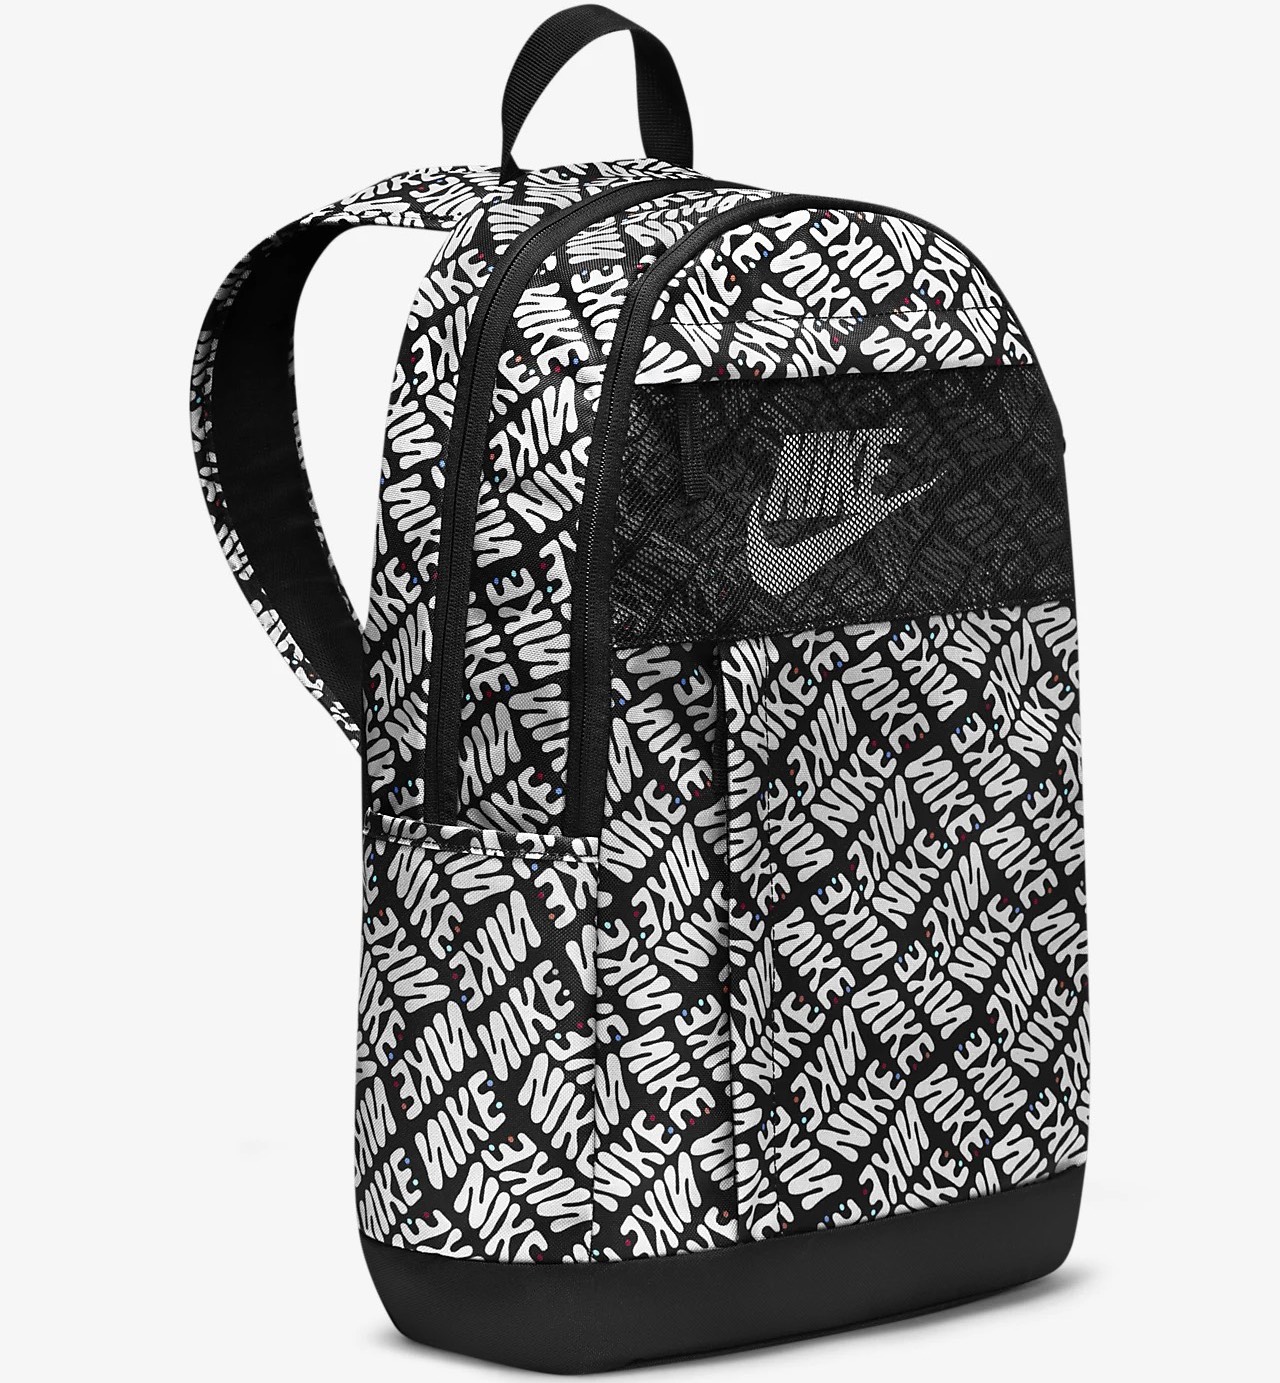 Balo Nike School Classic Backpack Chất liệu Polyester bền đẹp, nổi bật